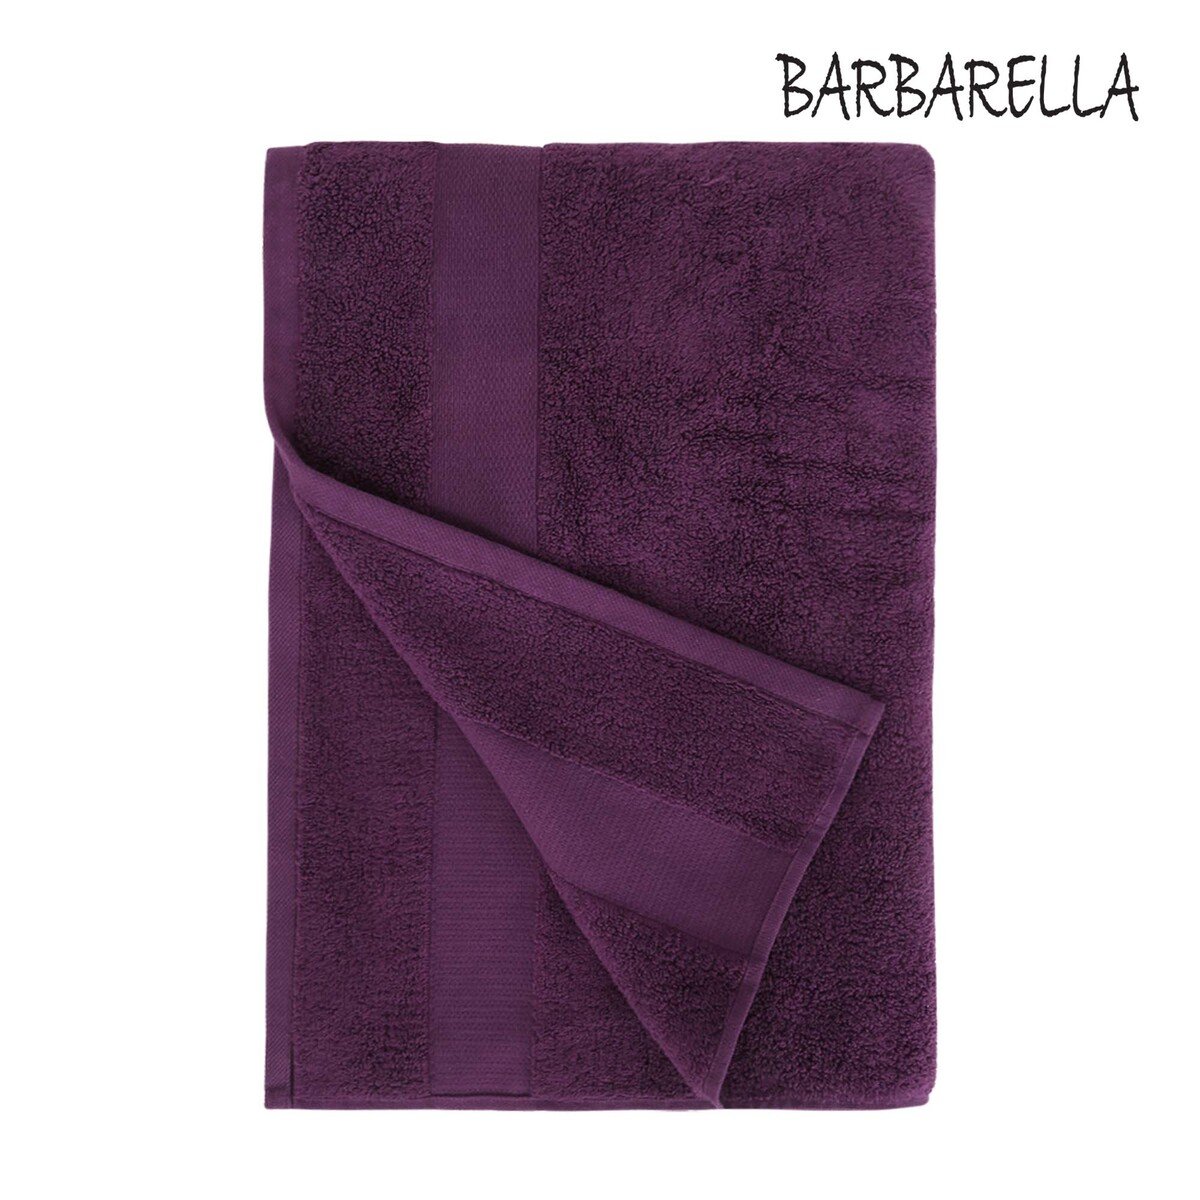 Barbarella Bath Towel Micro Cotton Purple Size: W70 x L140cm